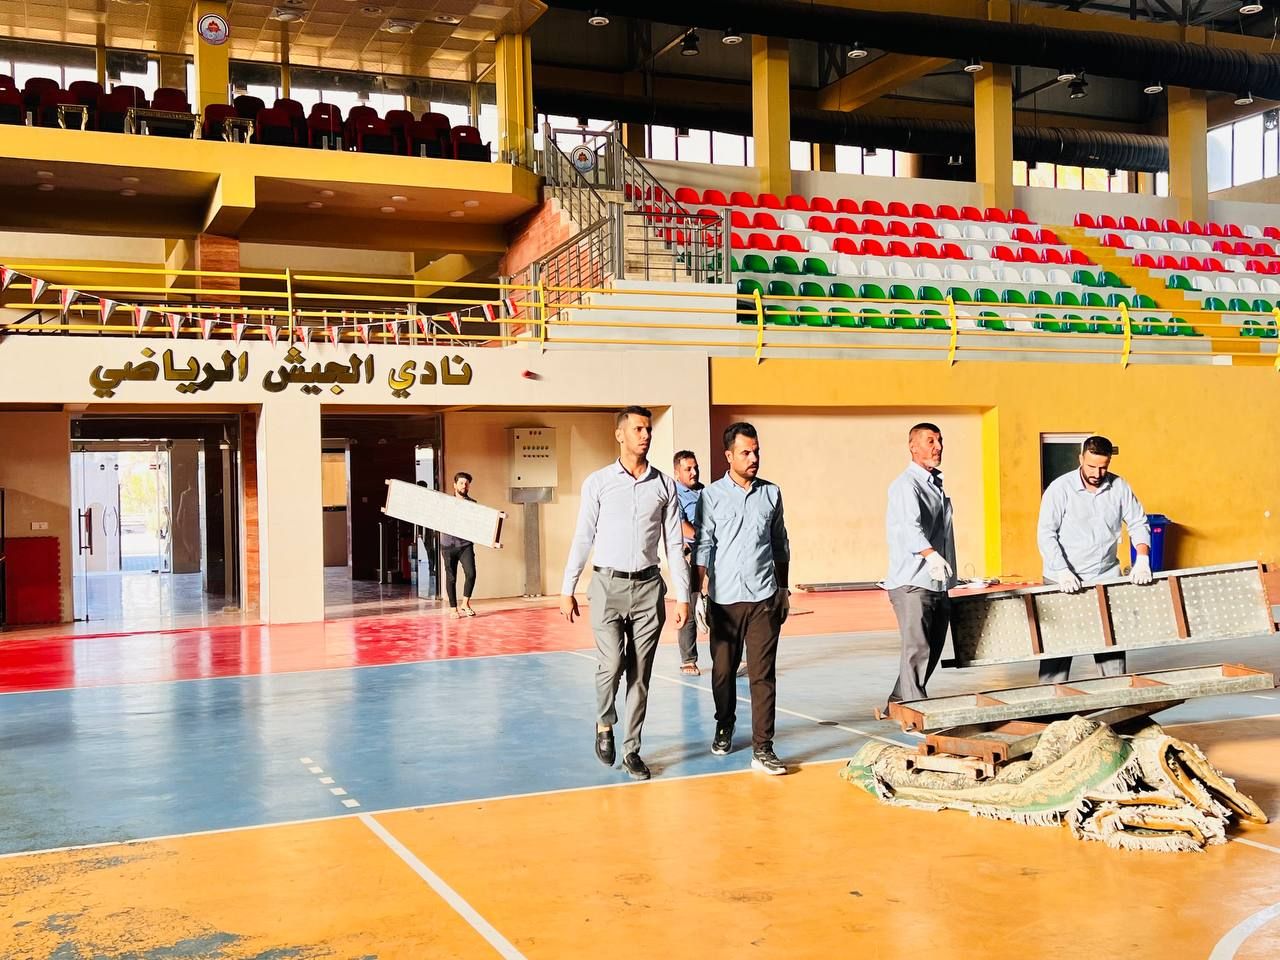 ملاكات المَجمَع العلميّ في بغداد يواصلون الاستعدادات النهائية لإقامة حفل تخرج الدورات الصيفية